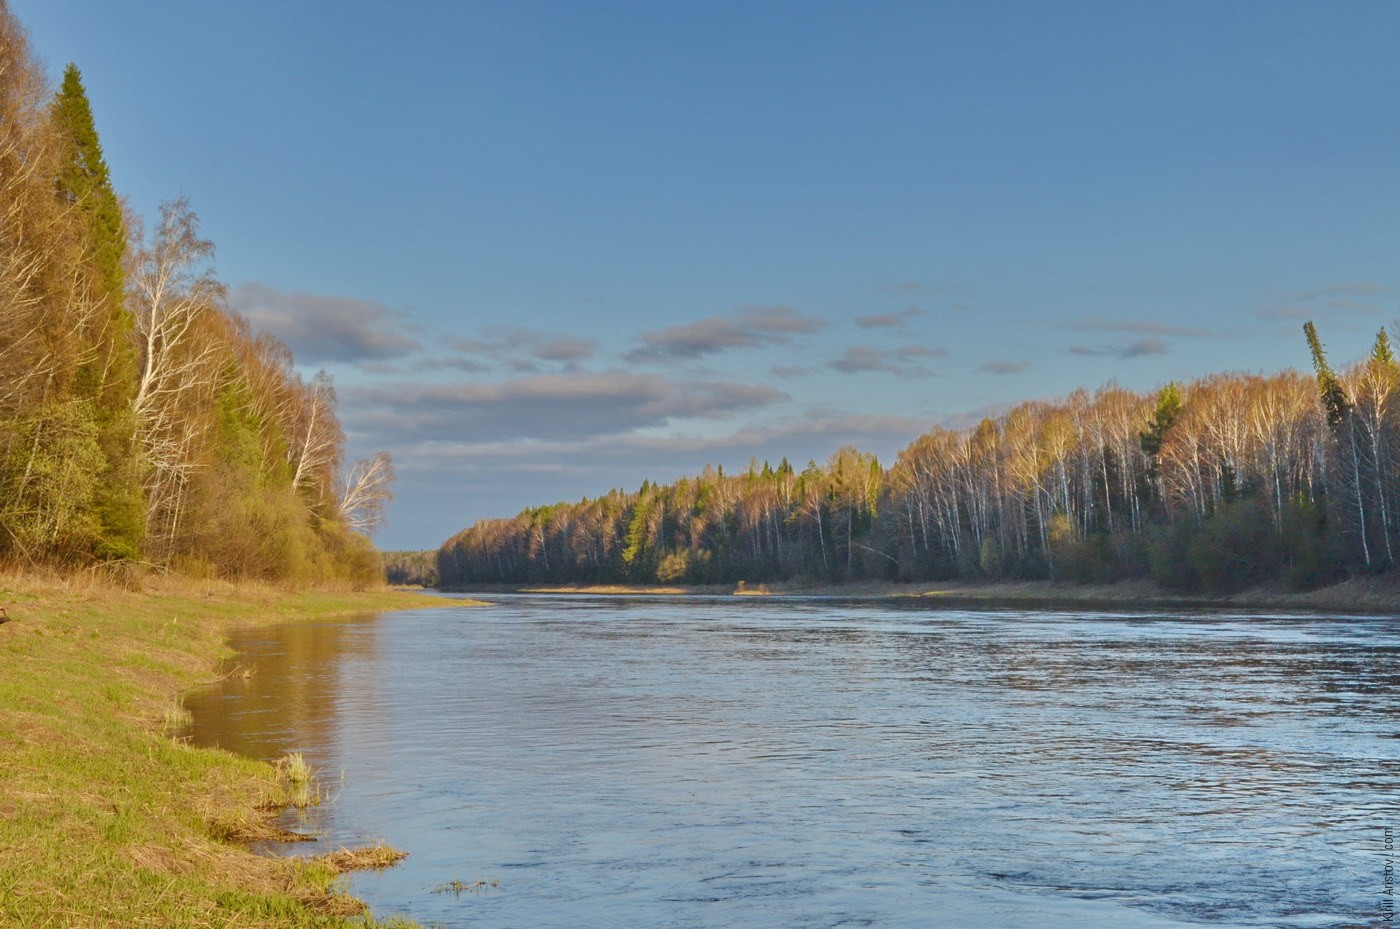 Река направляется в равнины, Место: Река Тагил, урочище Кискина. Махнёвский район, Свердловская область, Россия.